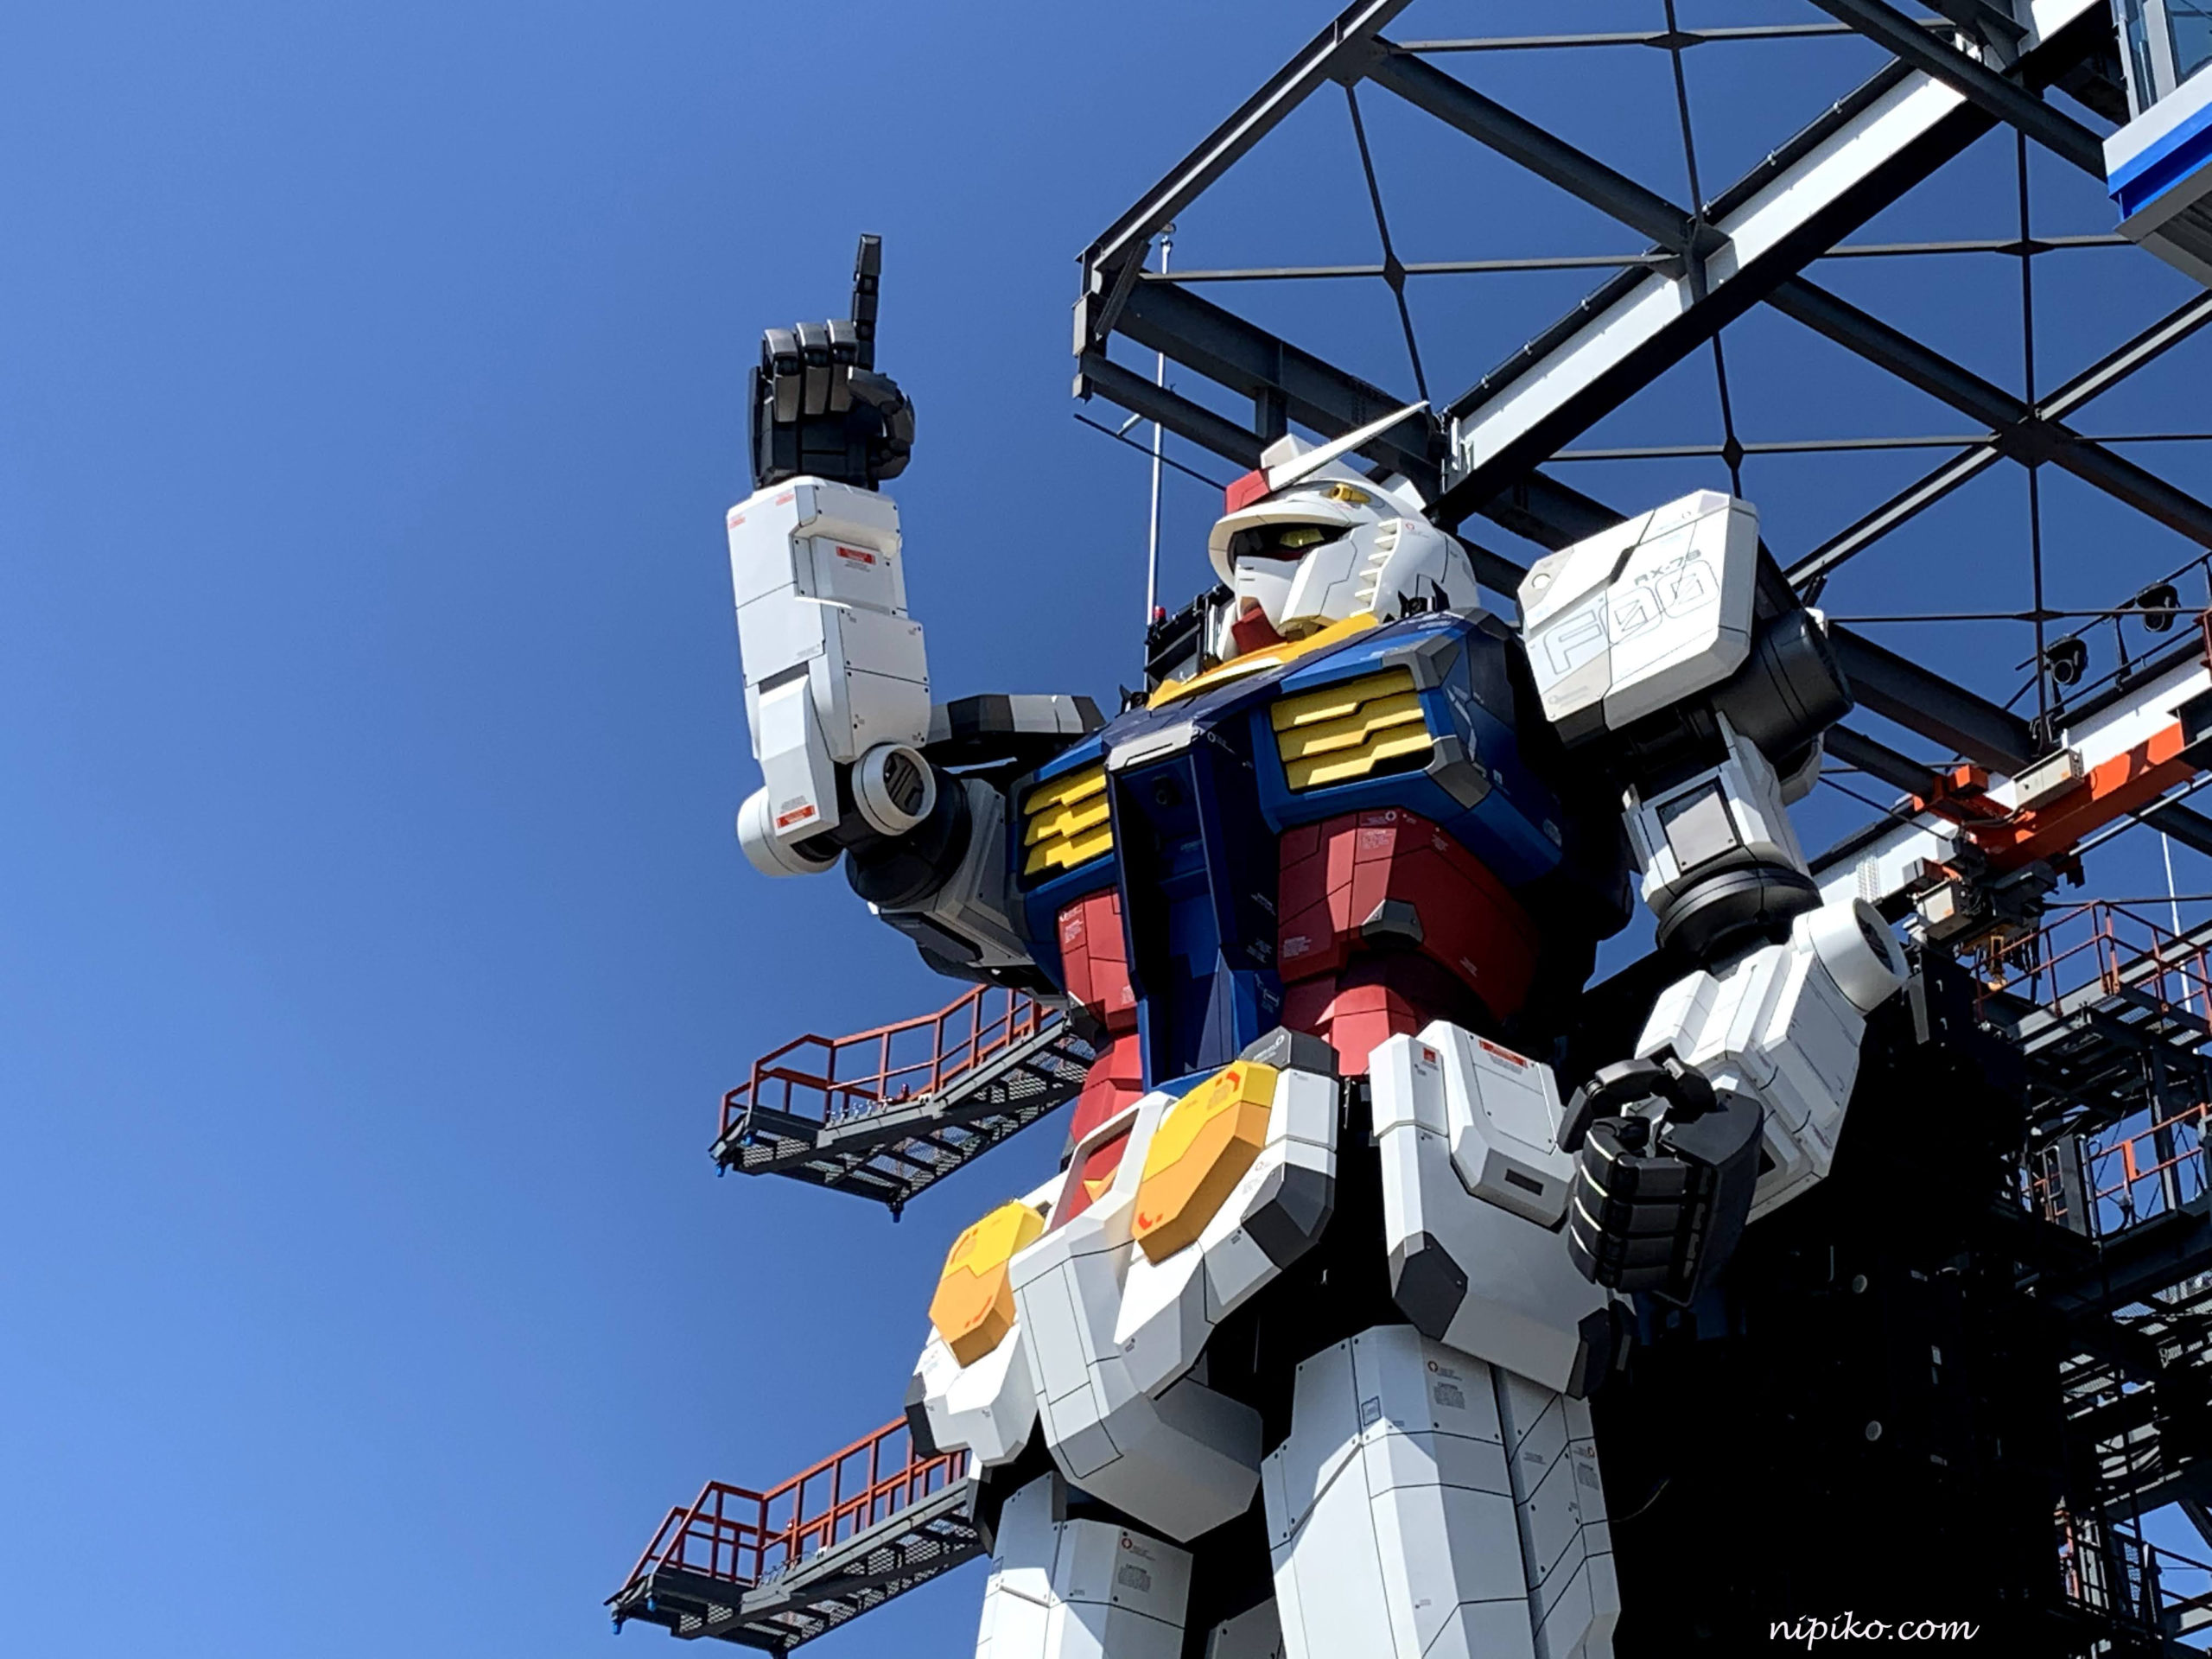 Nếu bạn là một fan hâm mộ Gundam, cơ hội tham quan Gundam Factory Yokohama đang đợi bạn. Đây là một trung tâm trưng bày vũ khí Gundam của Nhật Bản và nơi được xem là \